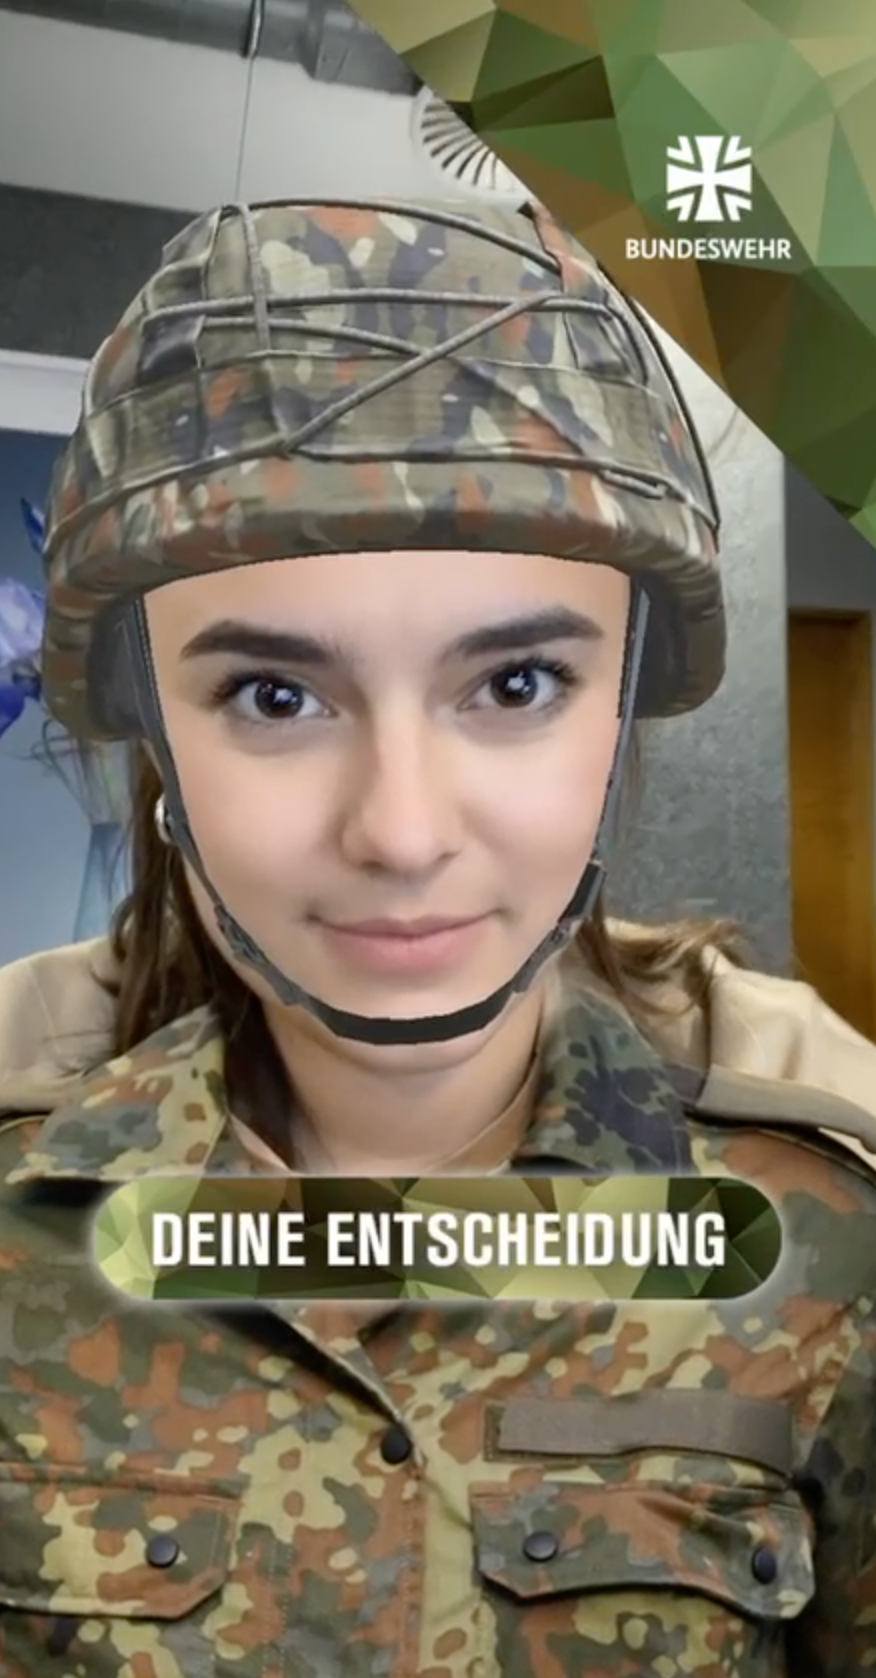 Mädchen in Tarnuniform der Bundeswehr. Darunter der Text "Deine Entscheidung."